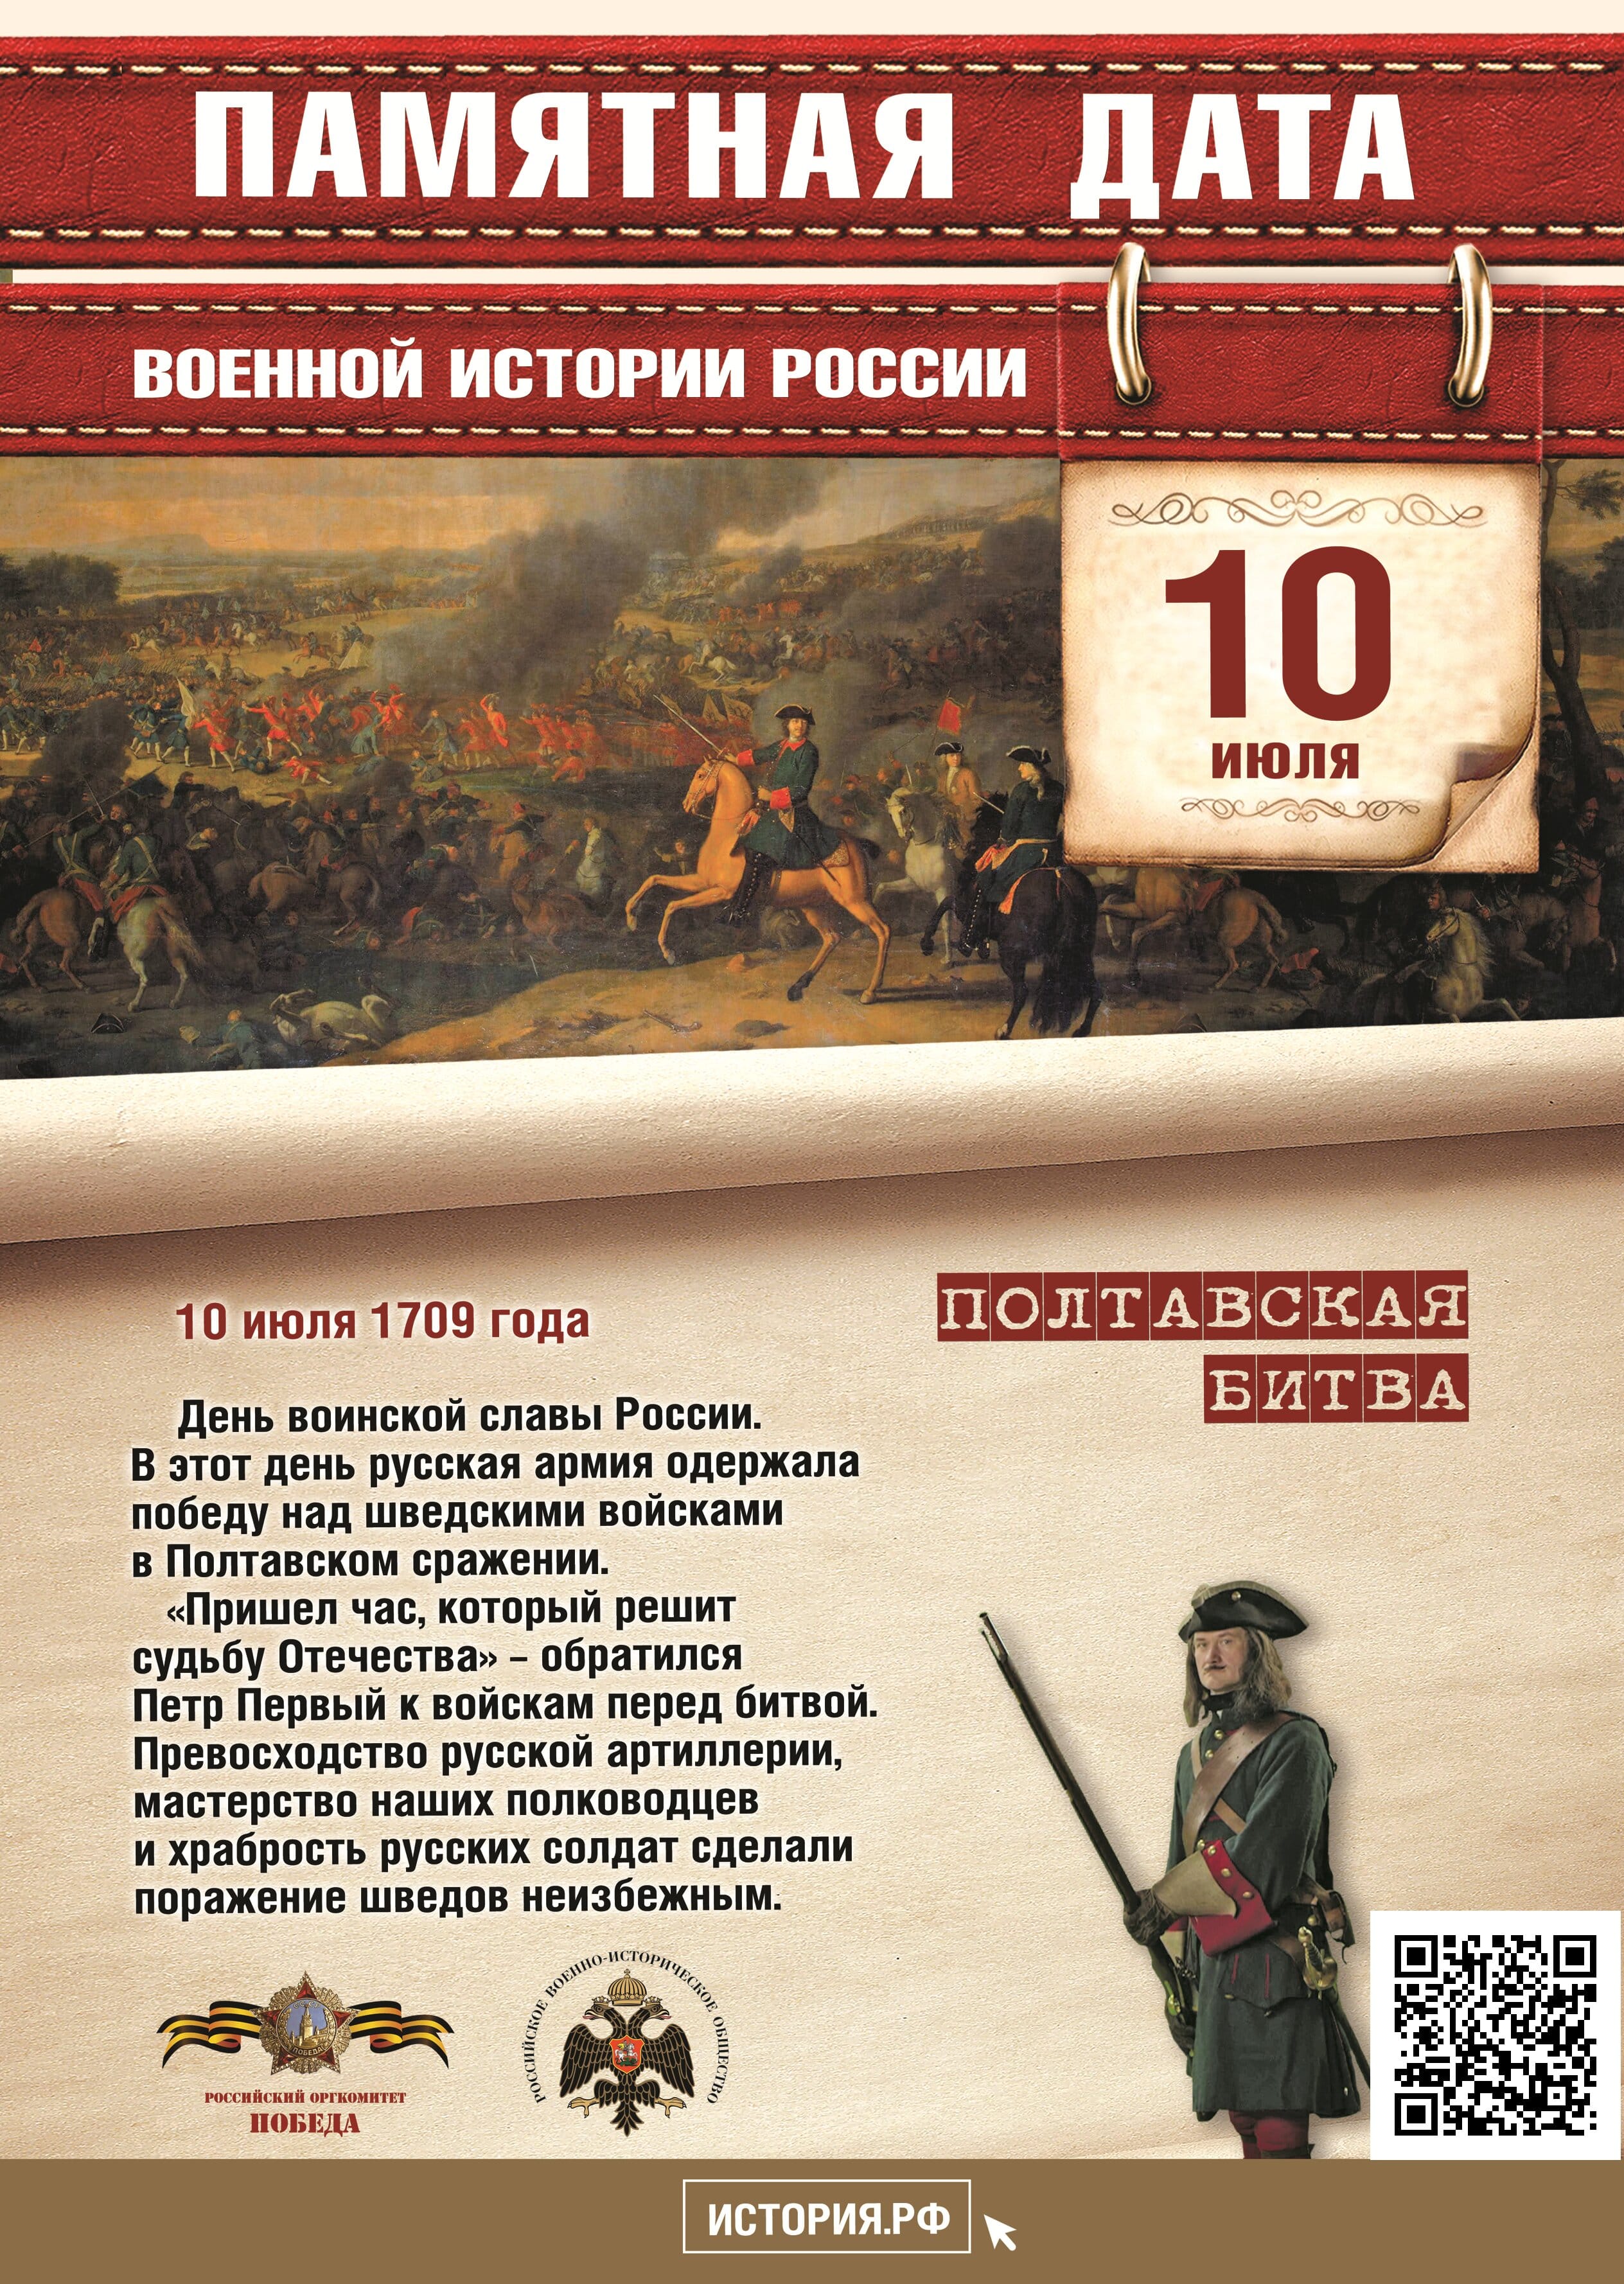 Памятная дата в истории России 